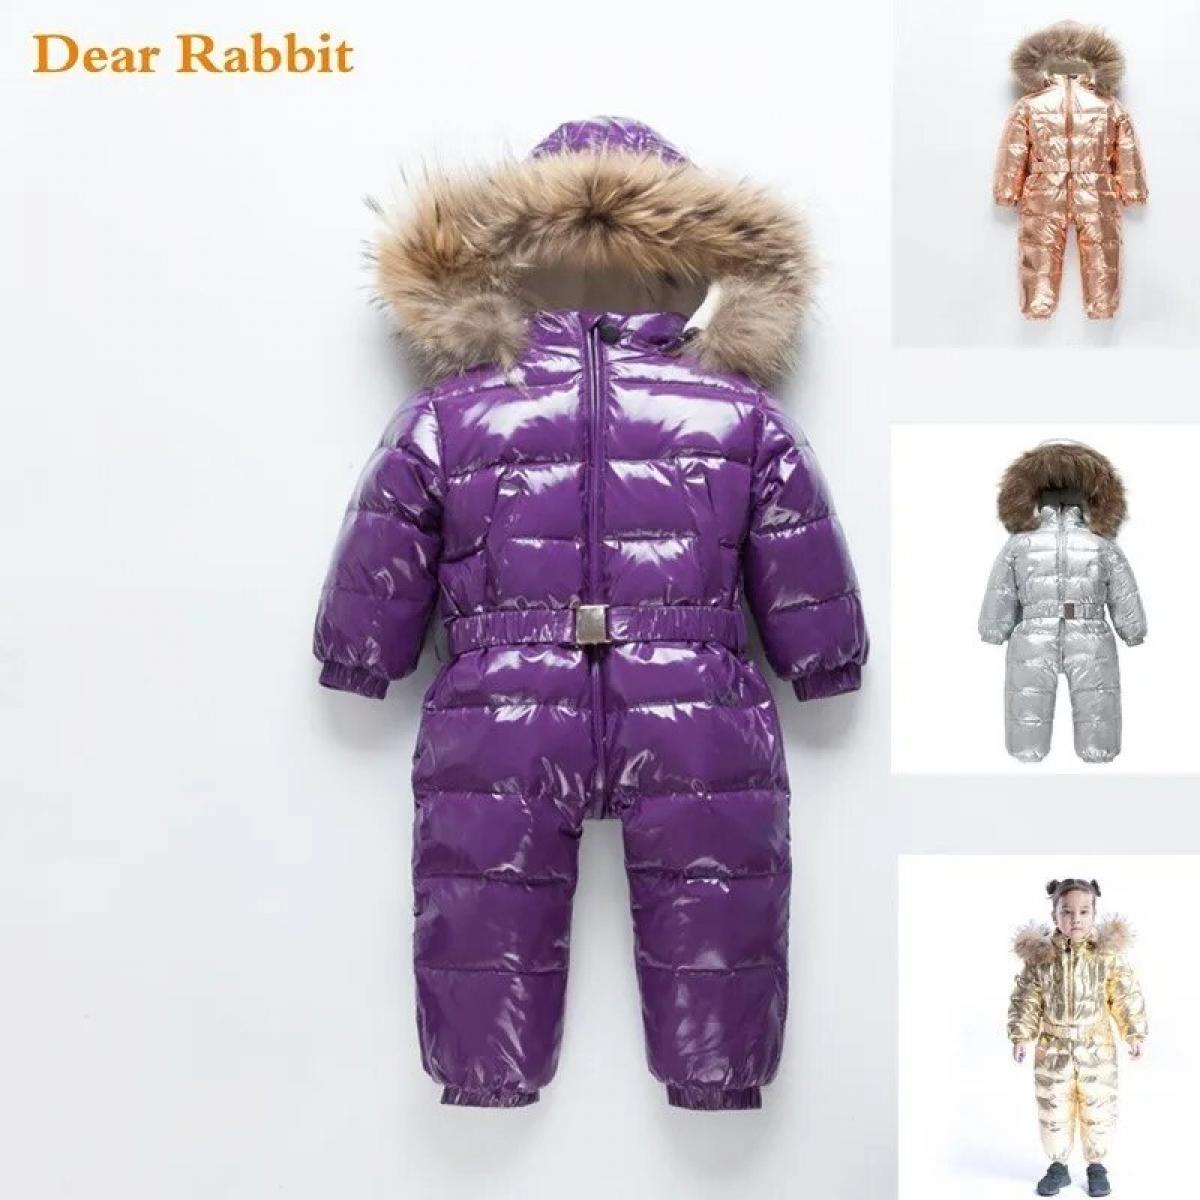 Abrigo de invierno para bebé, traje de nieve, pato, ropa para niños pequeños, traje de nieve 30